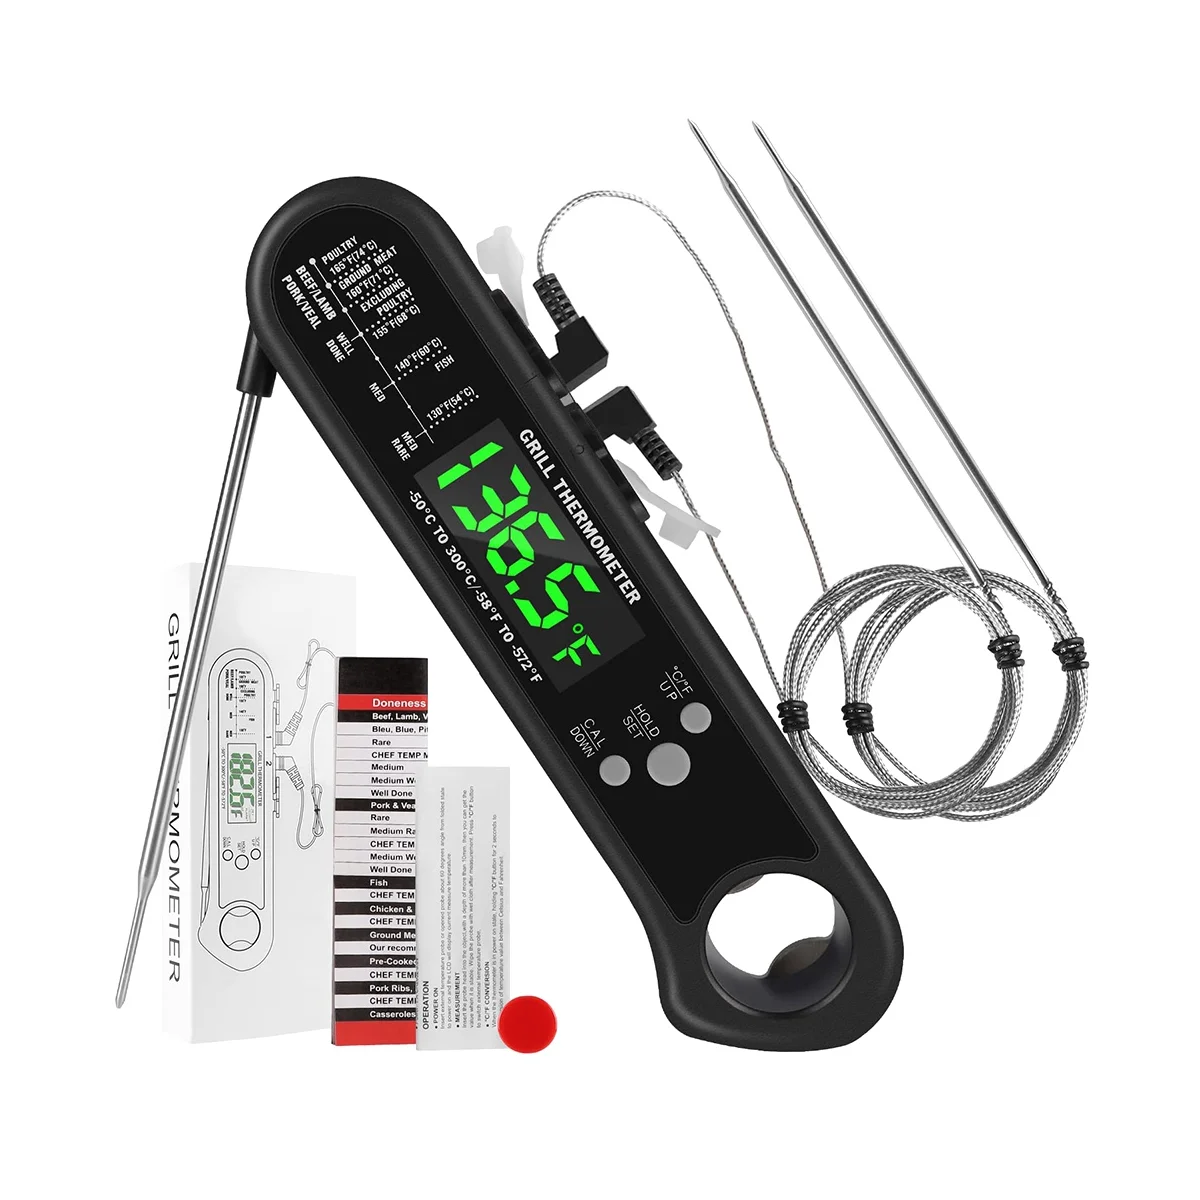 Цифров термометър за месо 3 в 1, хранително-вкусовата термометър миг четене с 2 подвижни фиксирани сонди, калибриране, функция на алармата